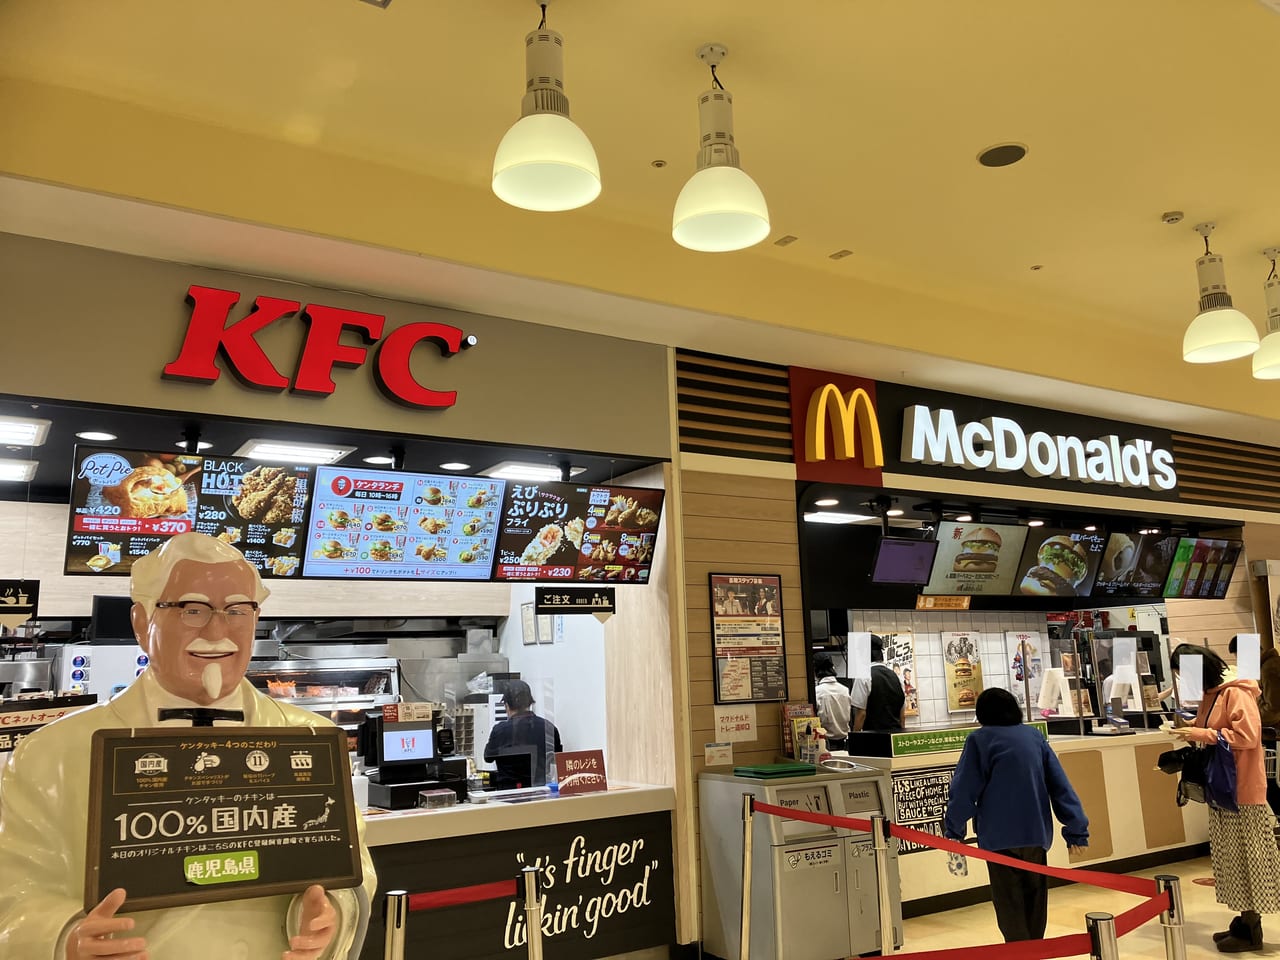 KFC MAC